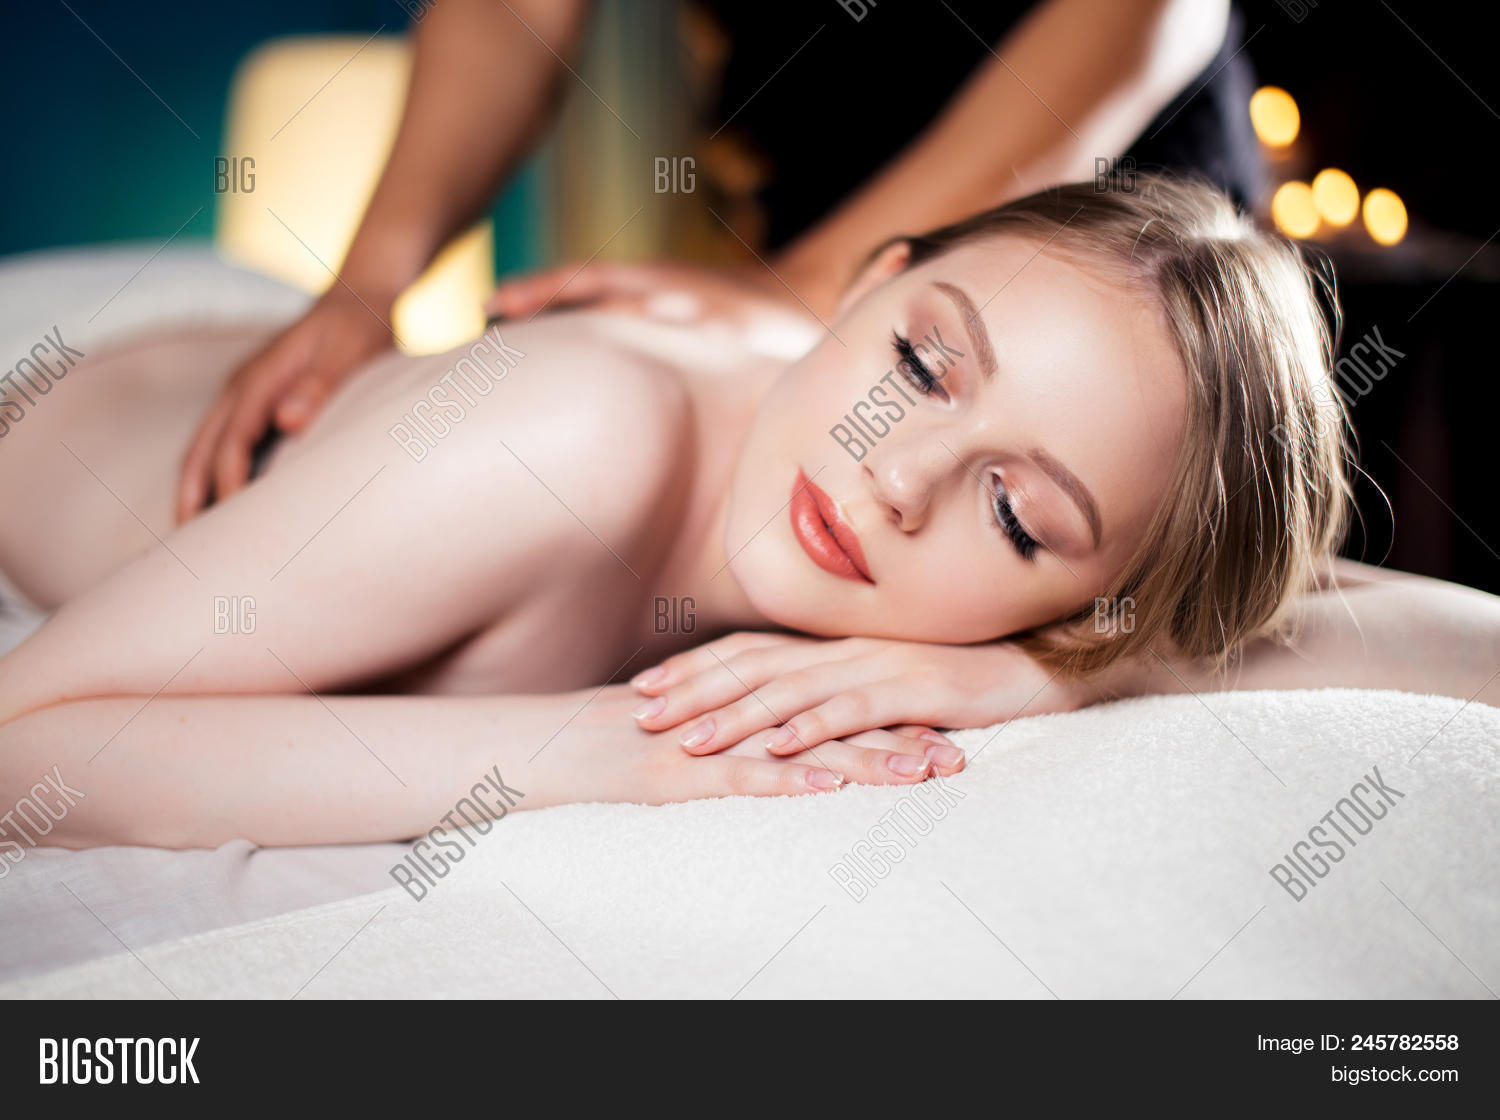 anna bixler recommends Hot Girl Massage Com